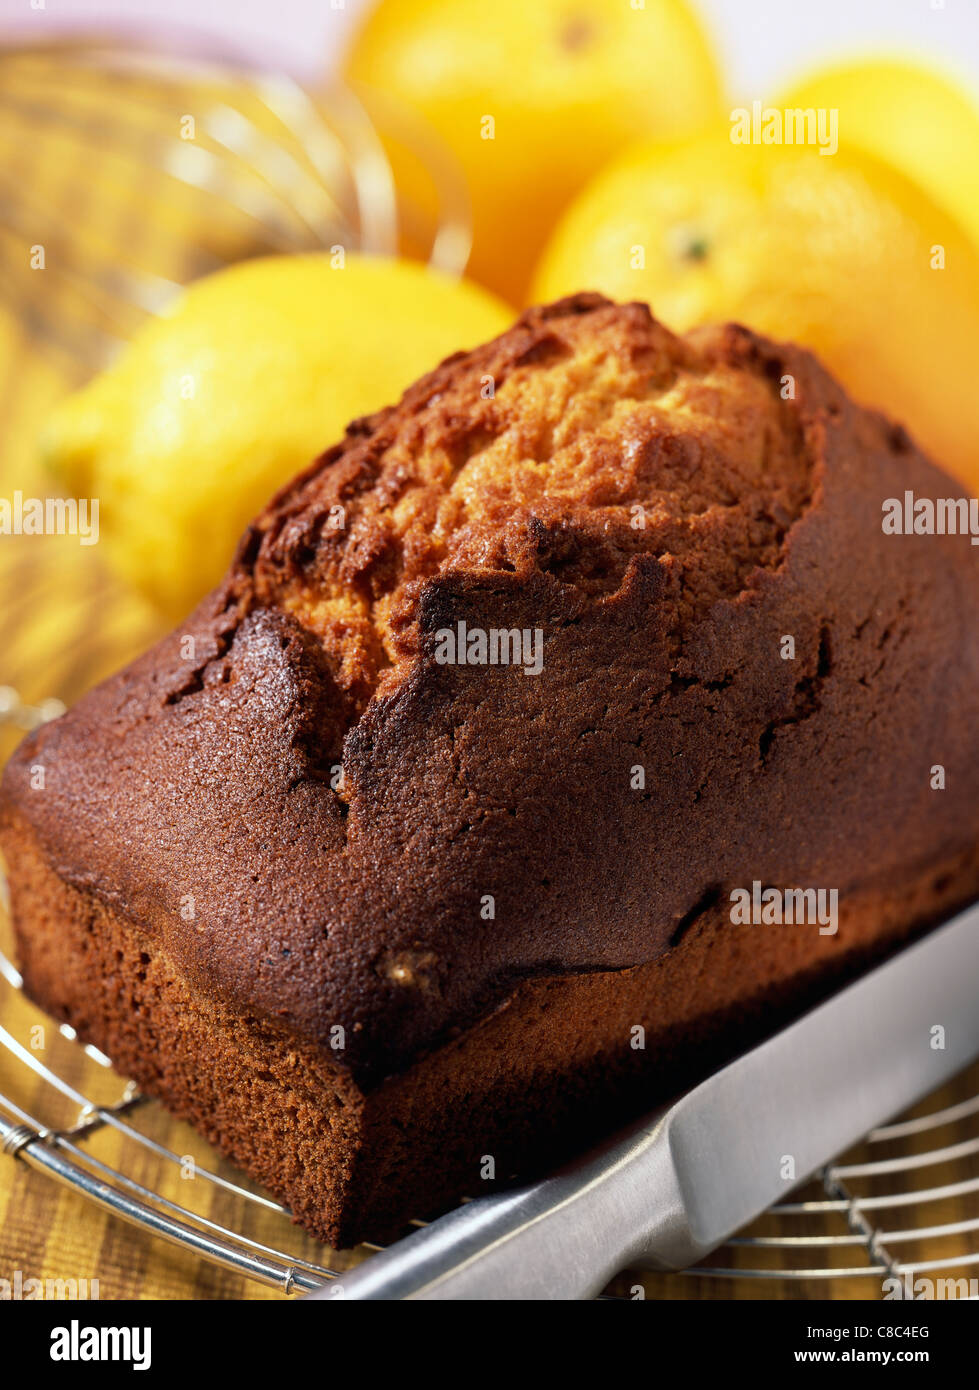 orange and lemon loaf cake Stock Photo